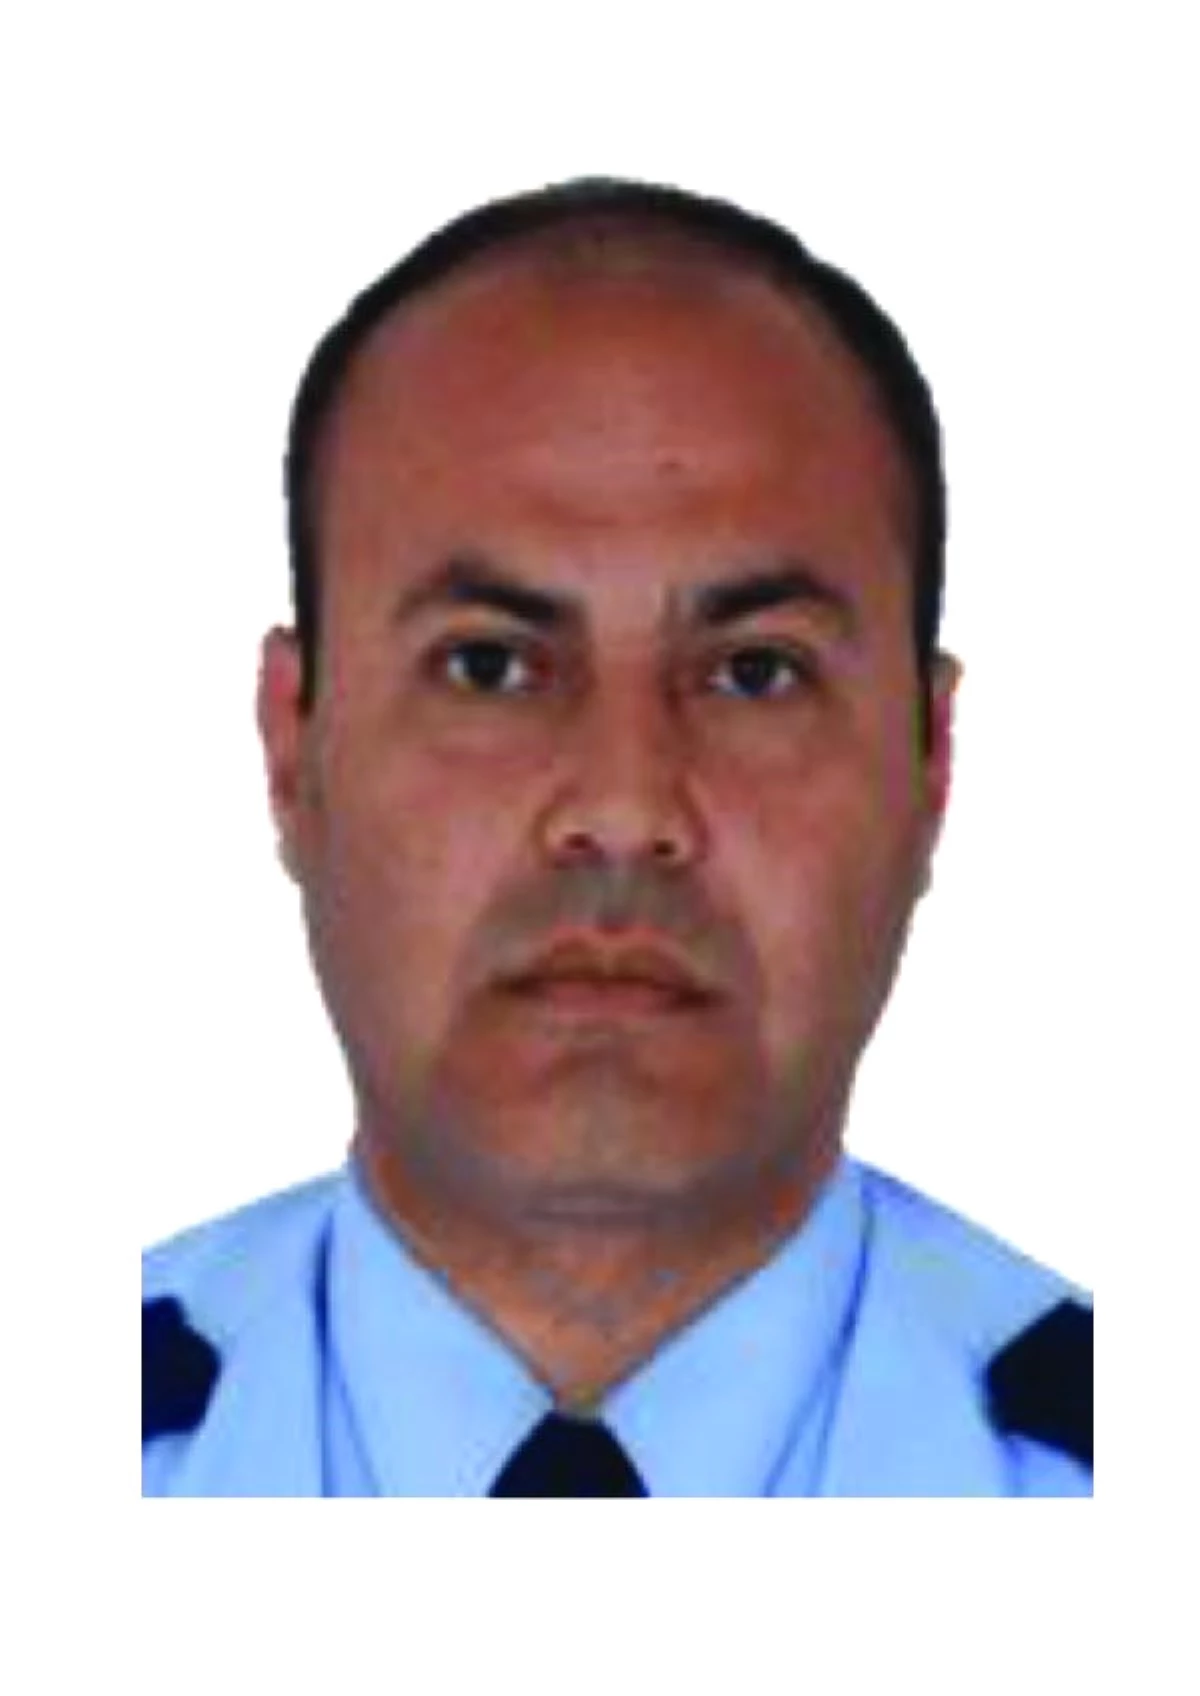 Antalya Emniyet Müdür Yardımcısı, Otomobilinde Ölü Bulundu (4)